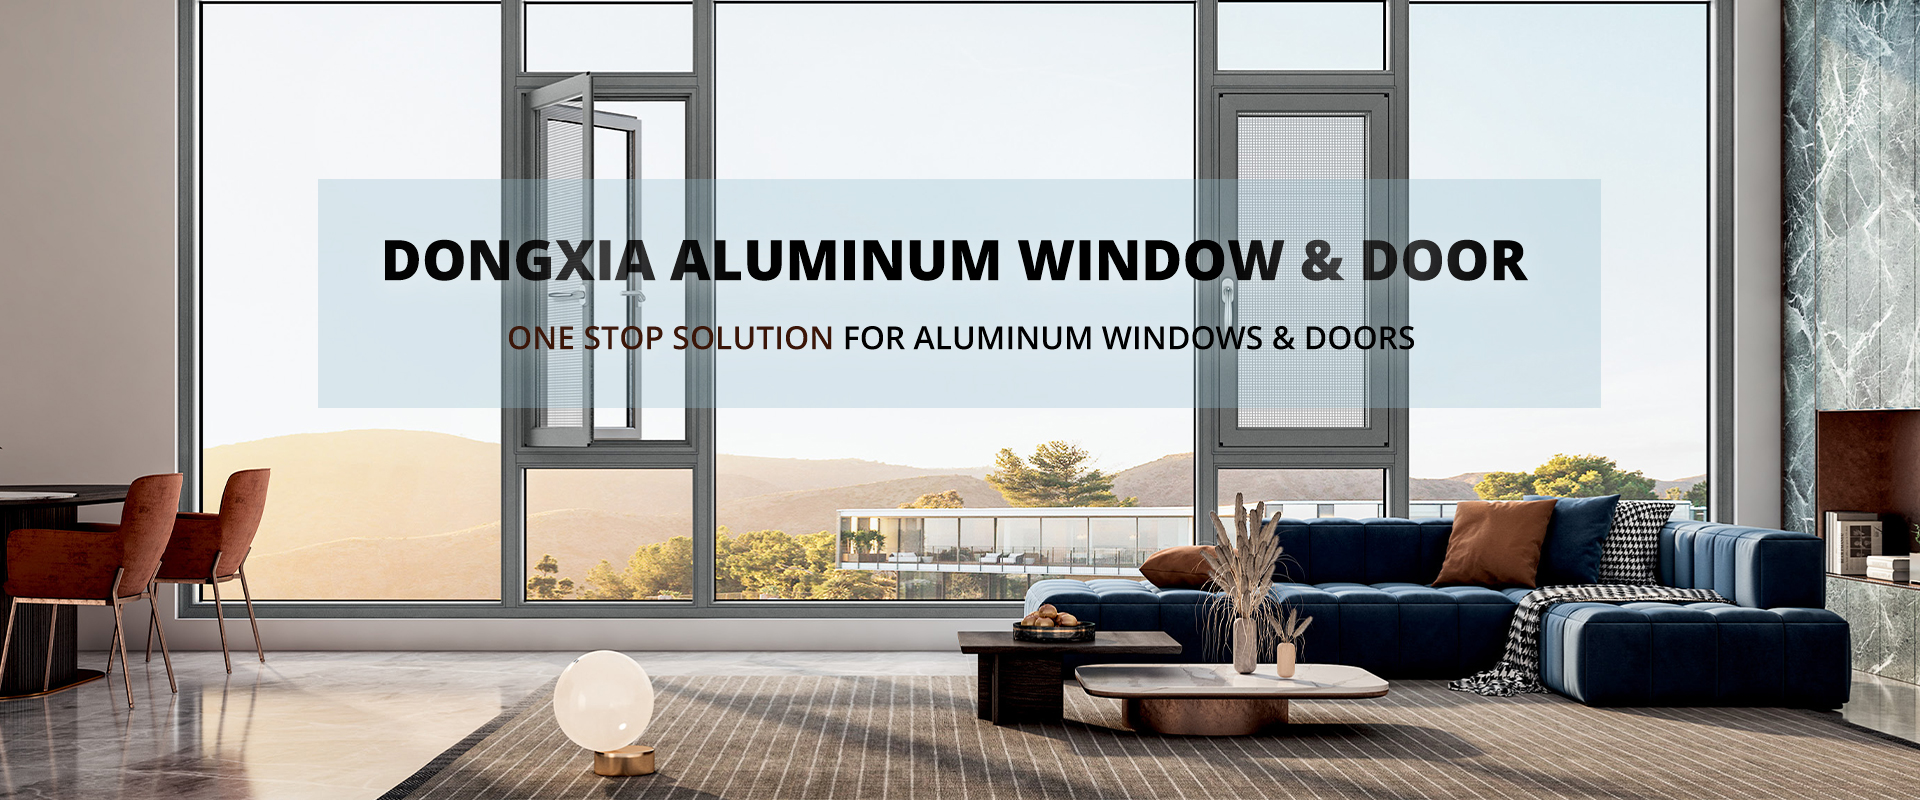 Dongxia Aluminum Window & Door Co., Ltd